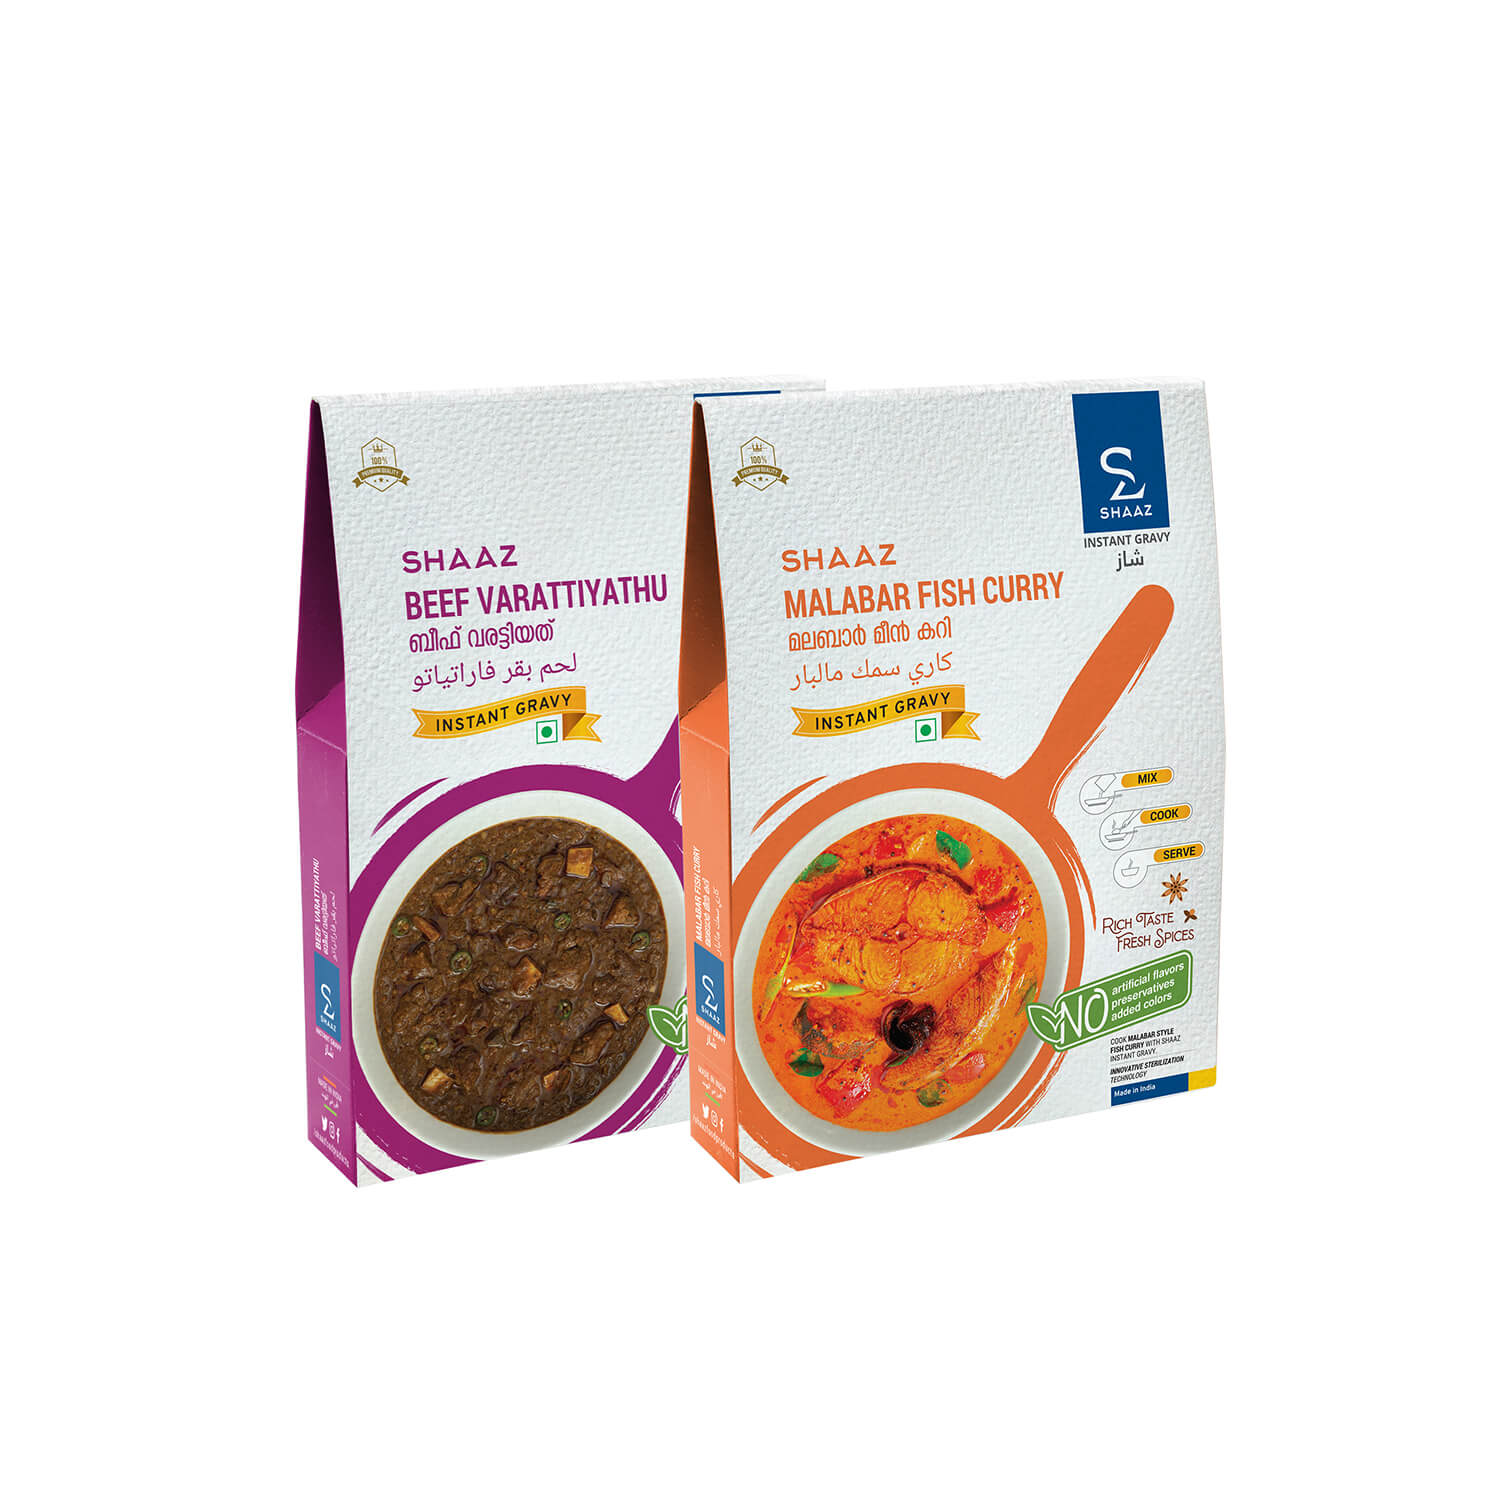 Malabar Fish Curry + Beef Varattiyathu Combo: Shaaz Foods